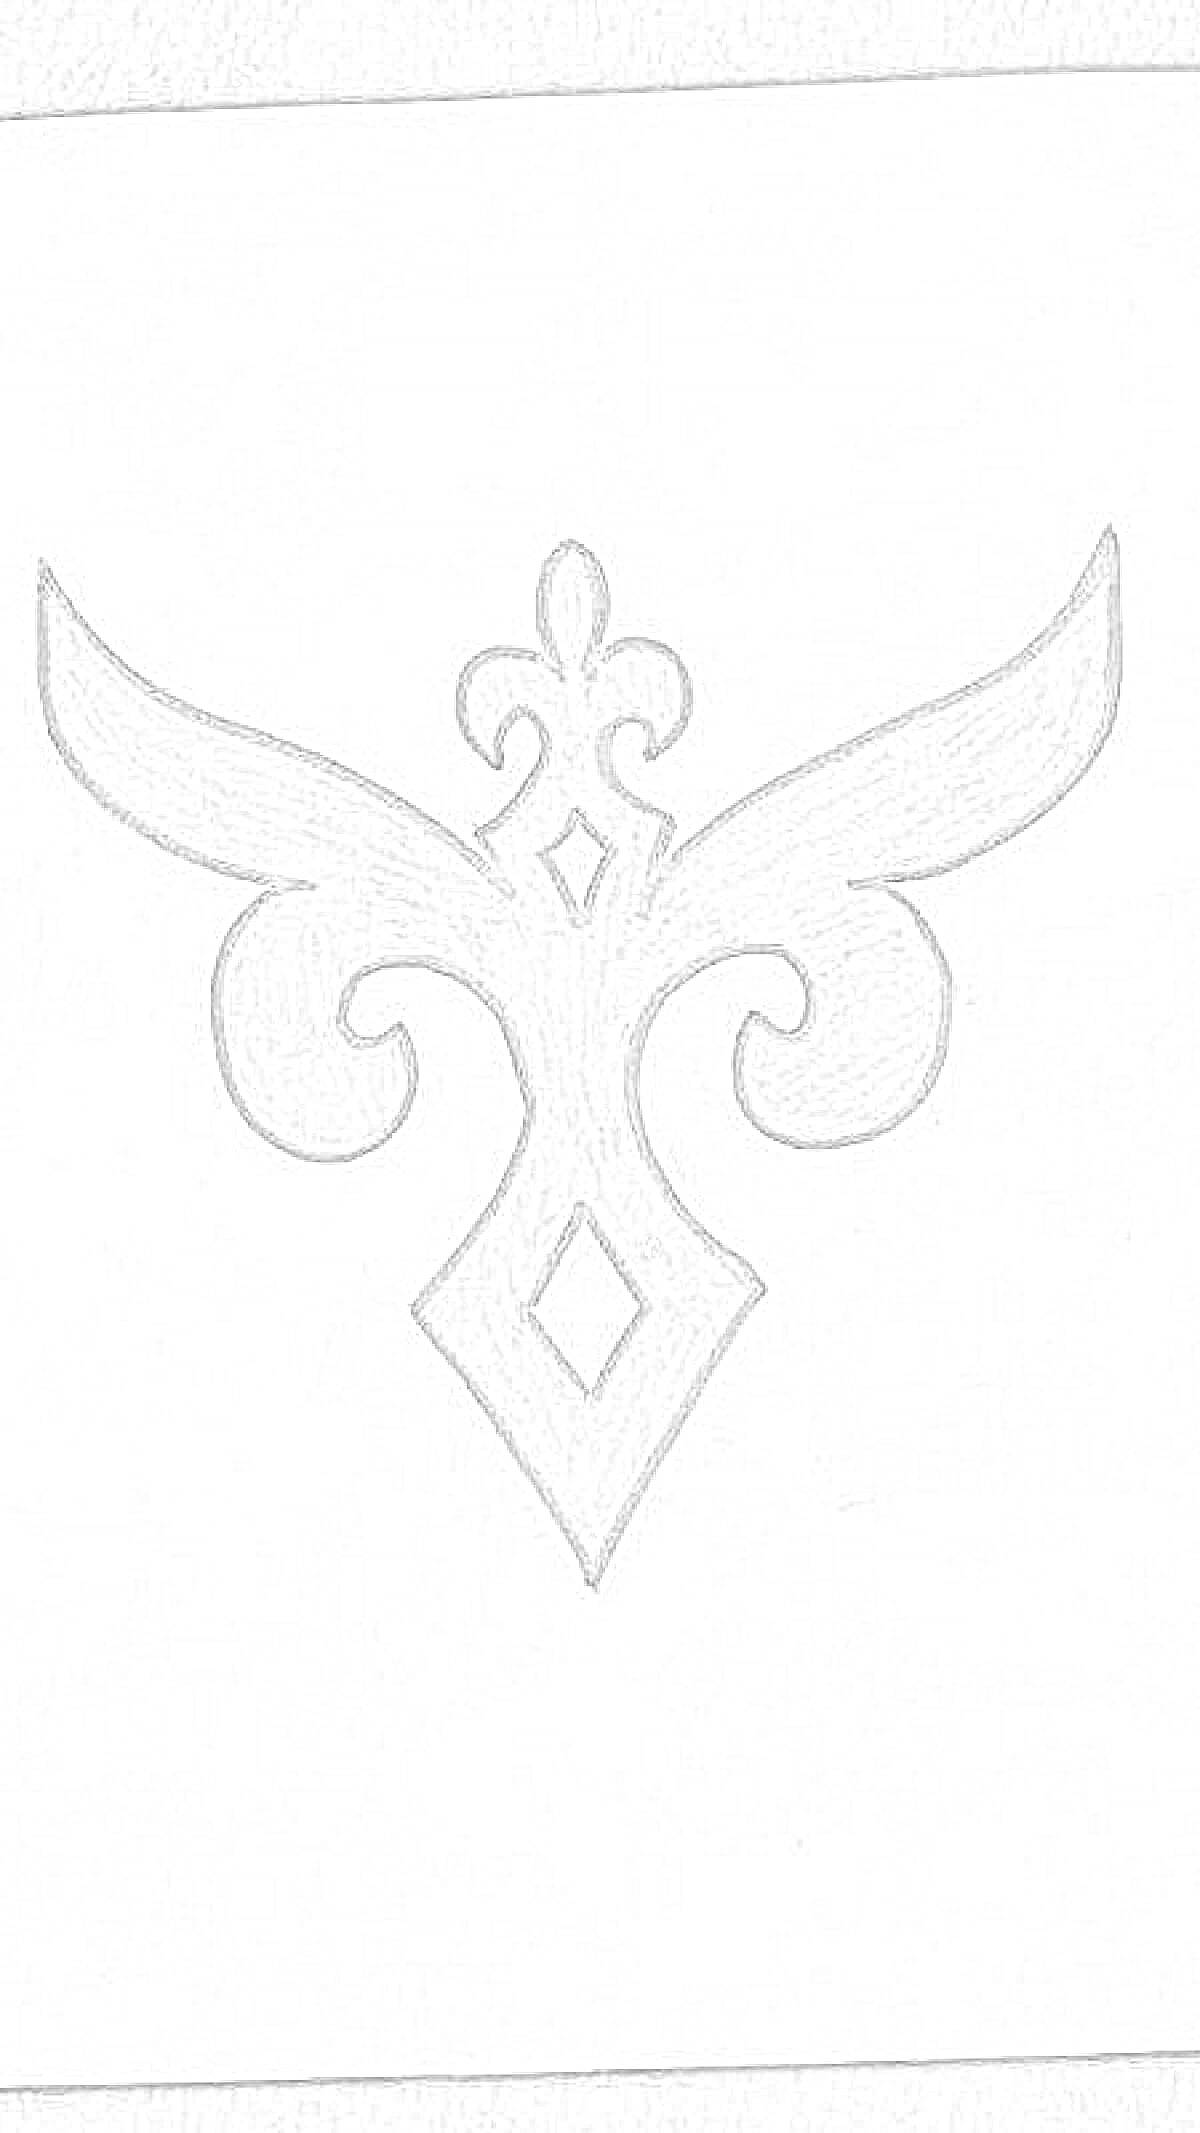 Раскраска Ою өрнек в виде симметричного узора с элементами крыльев и ромба